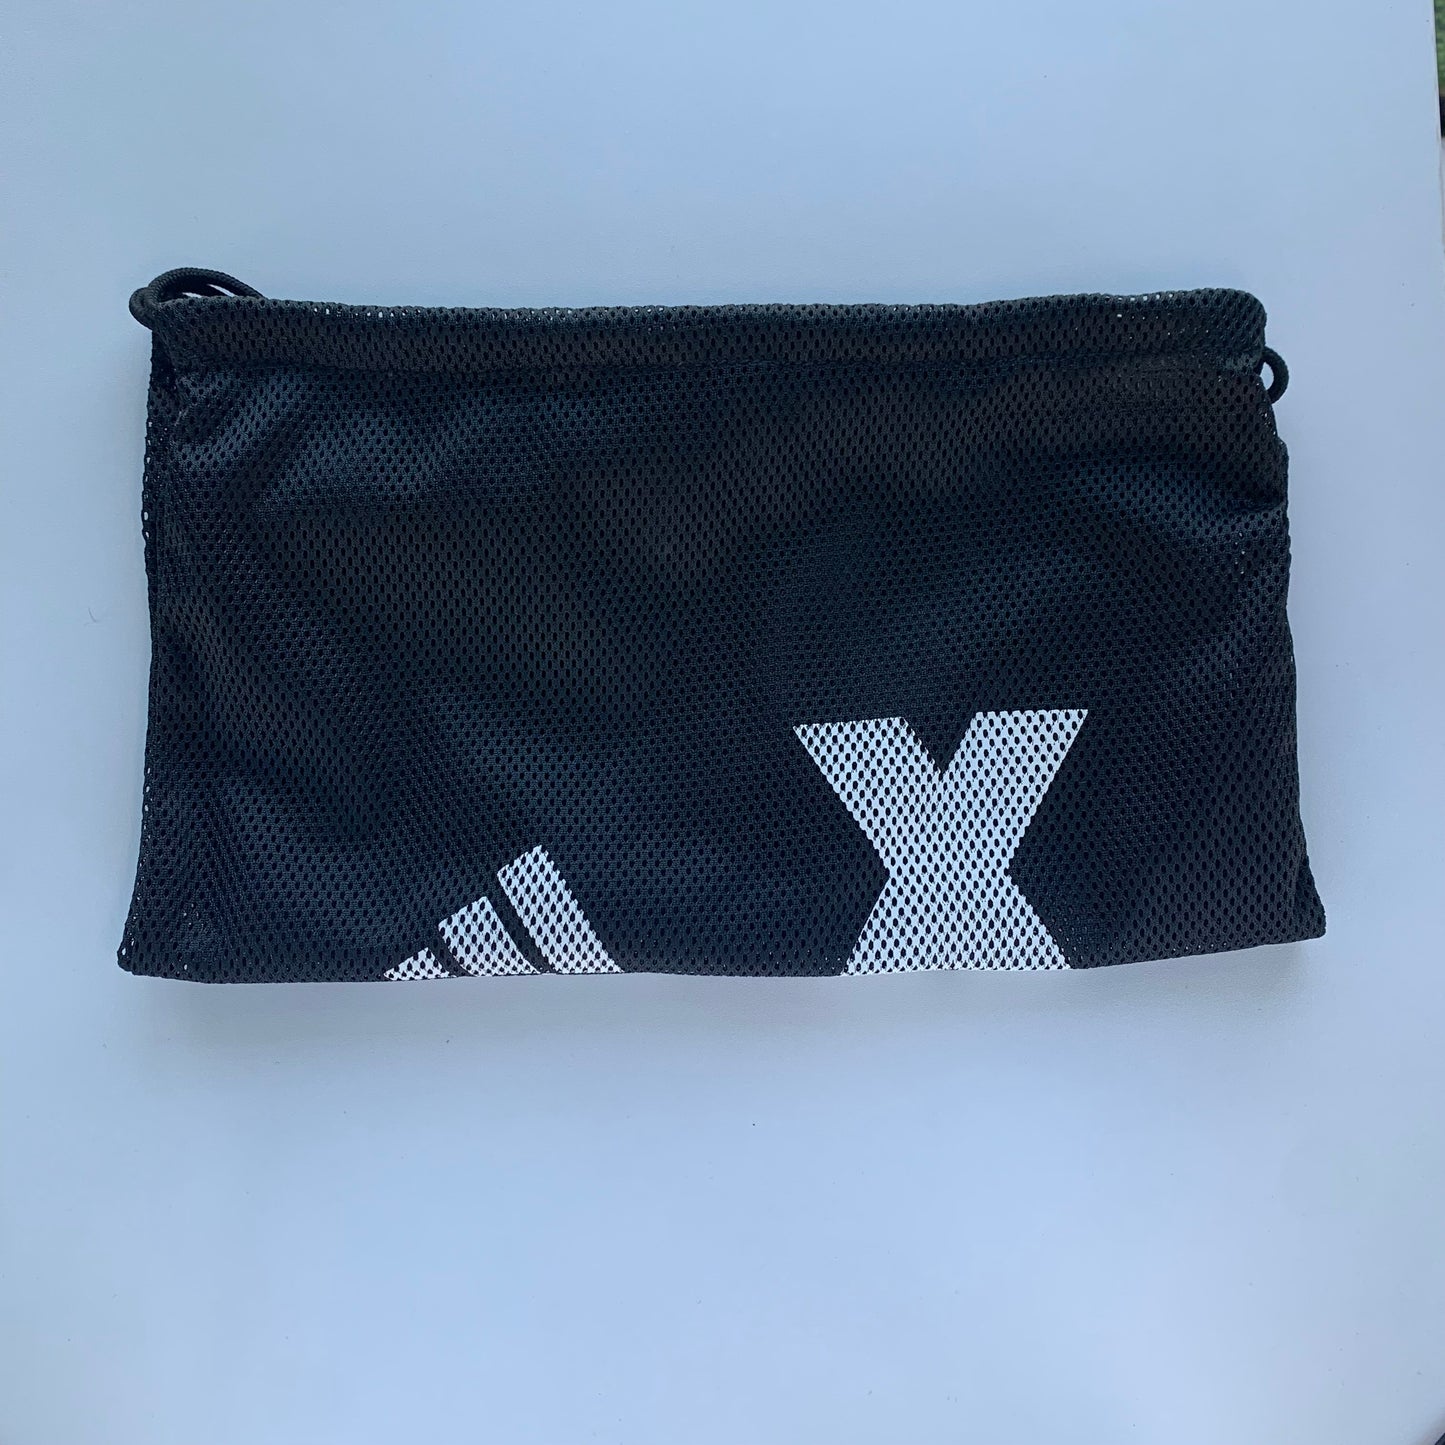 Adidas X 16.1 Leather FG